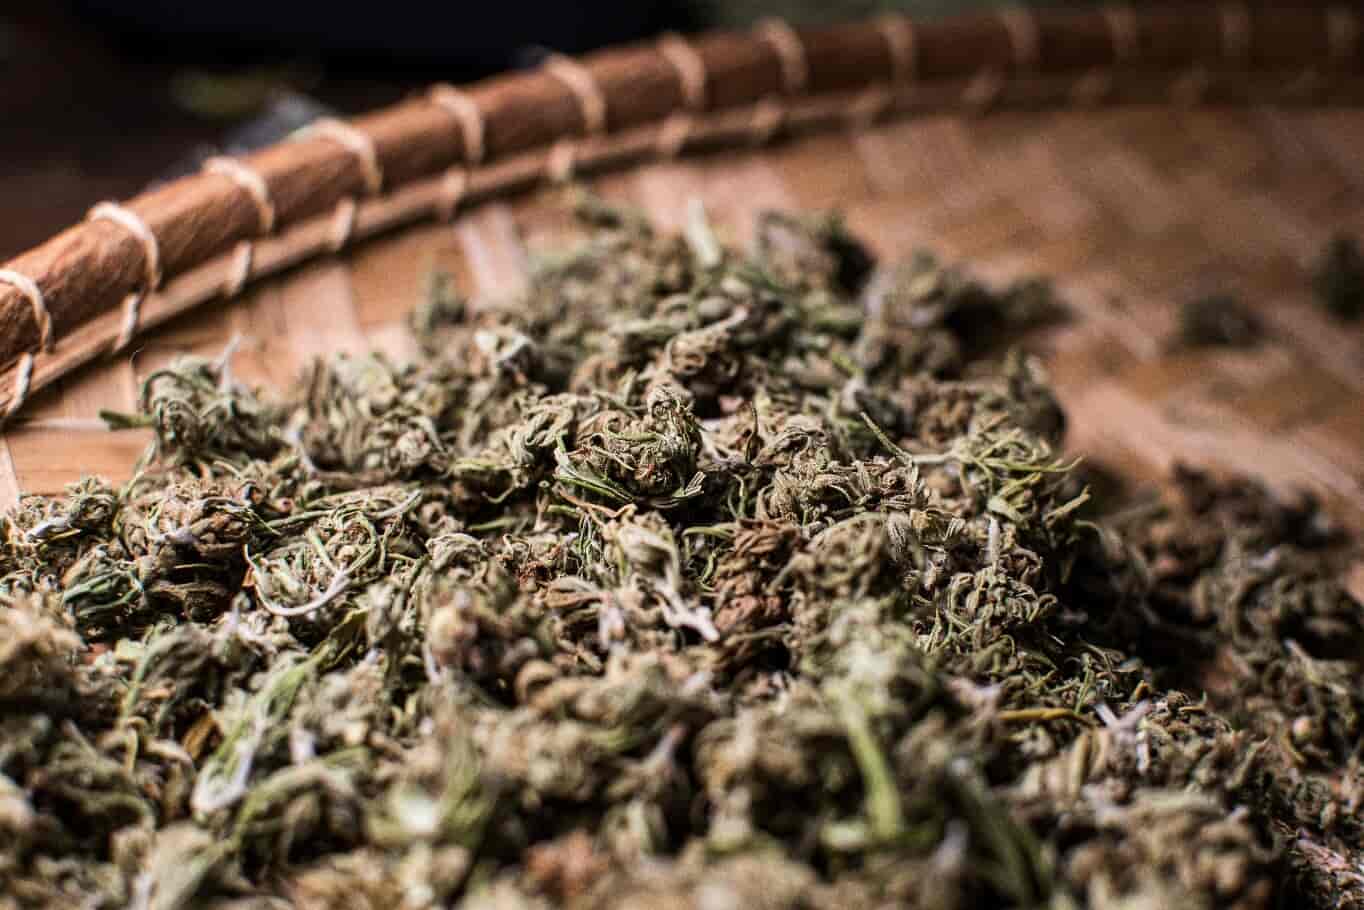 Dried Cannabis